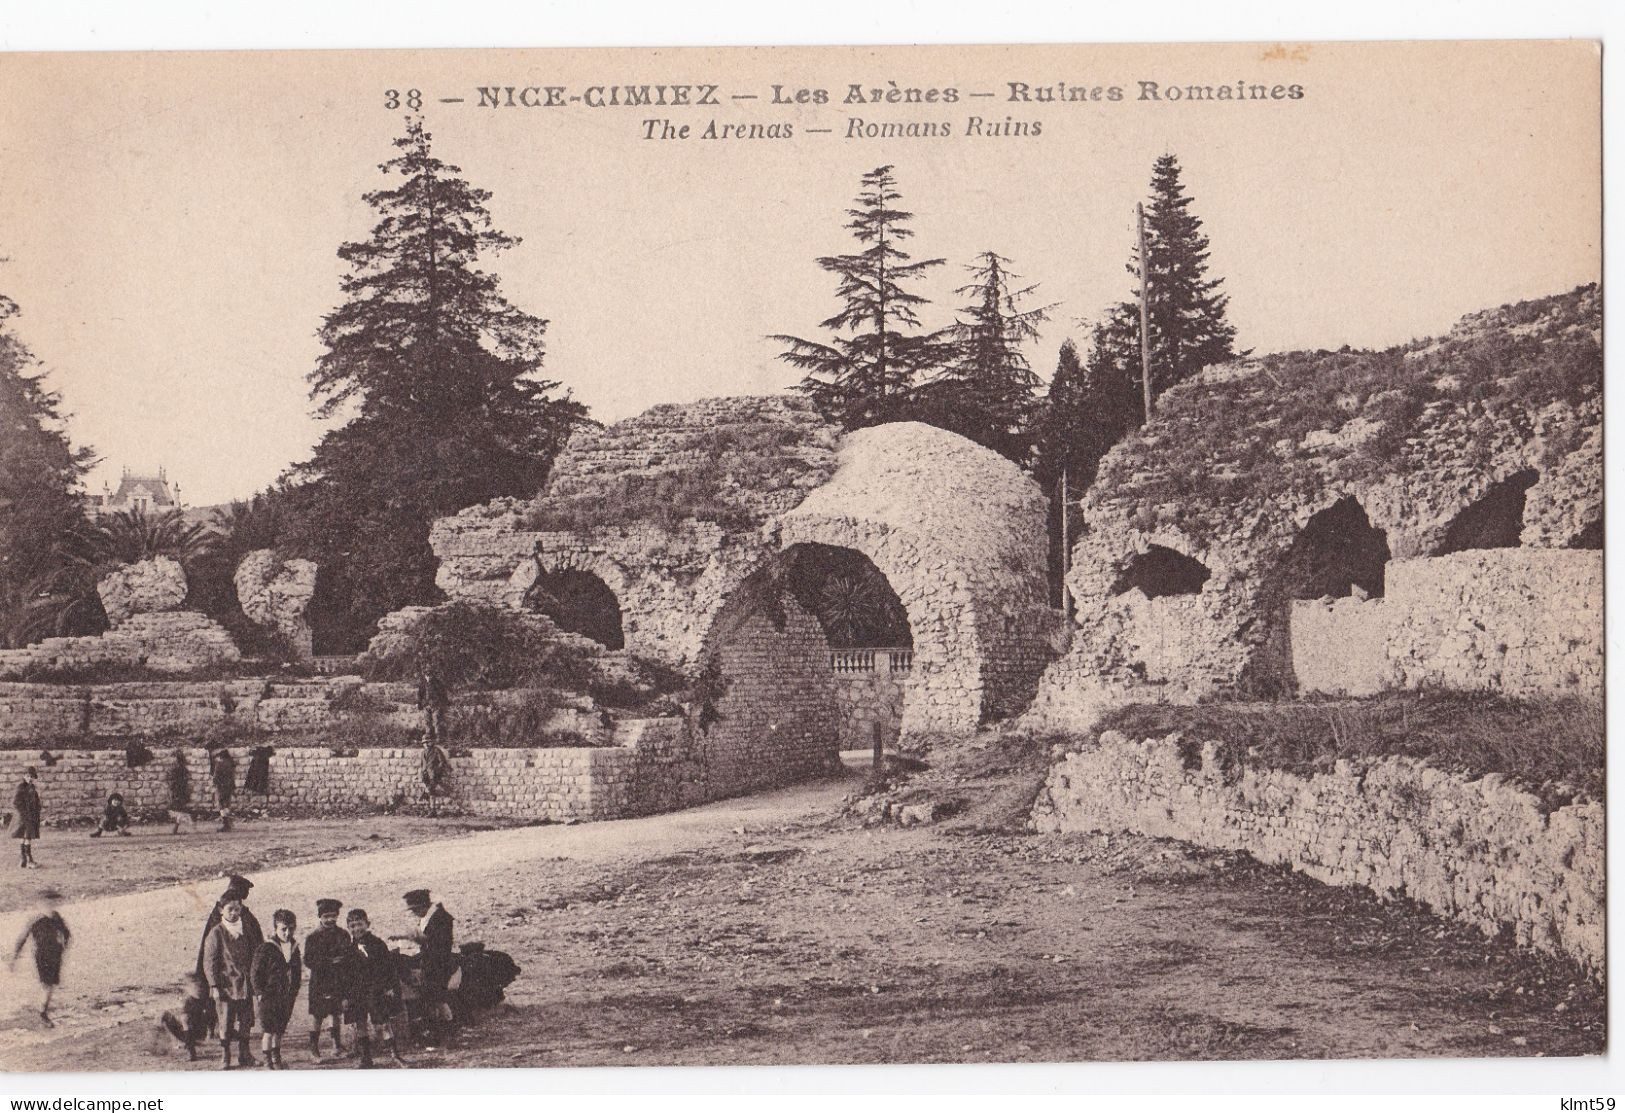 Nice-Cimiez - Les Arènes - Ruines Romaines - Monuments, édifices